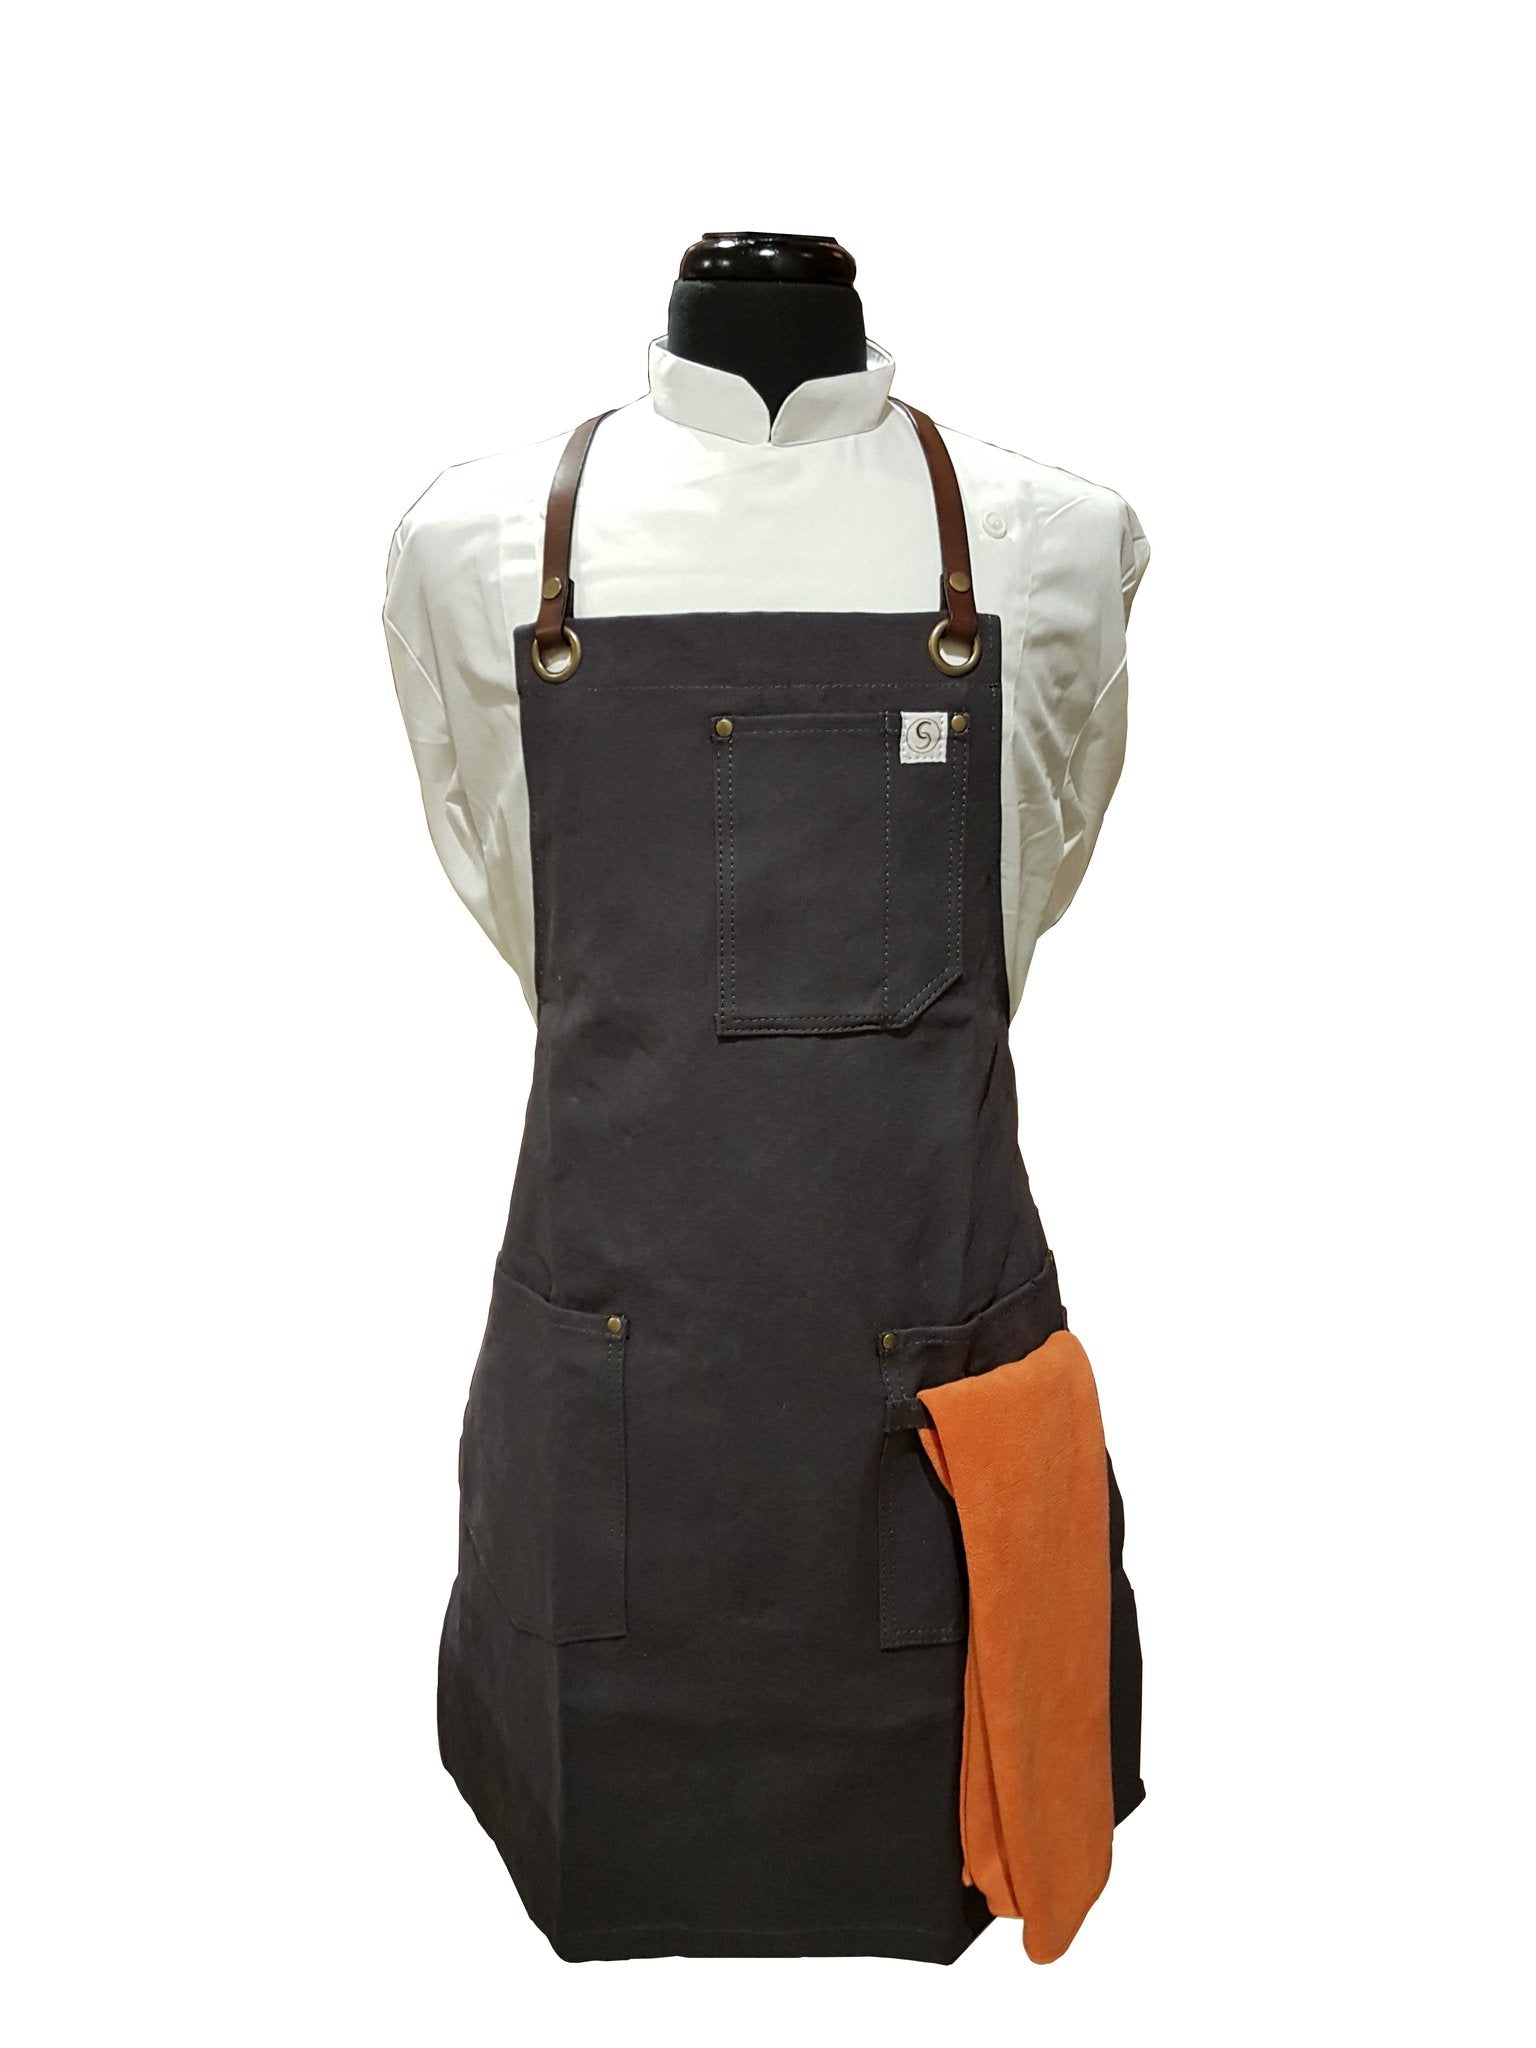 Leather Straps for CrossBack Apron - Shoulder & Waist Set, chef